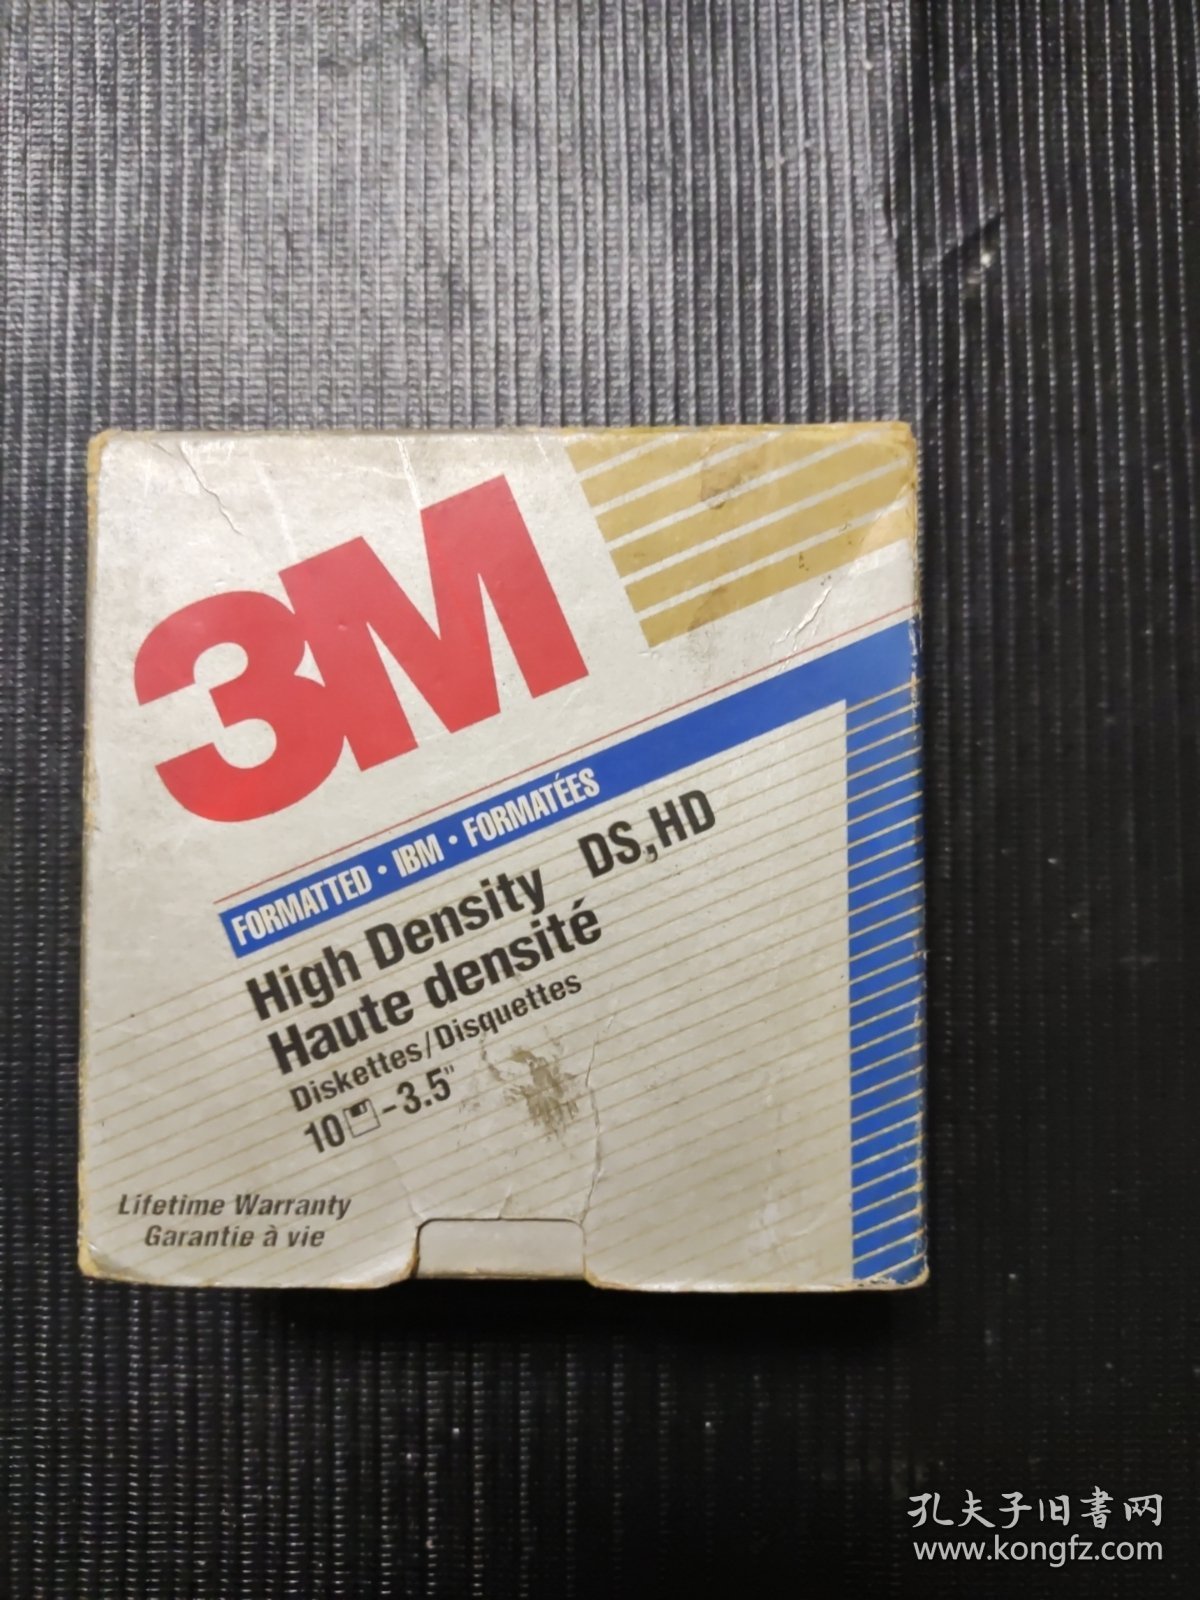 【软磁盘】3M IBM high densite 软磁盘7张